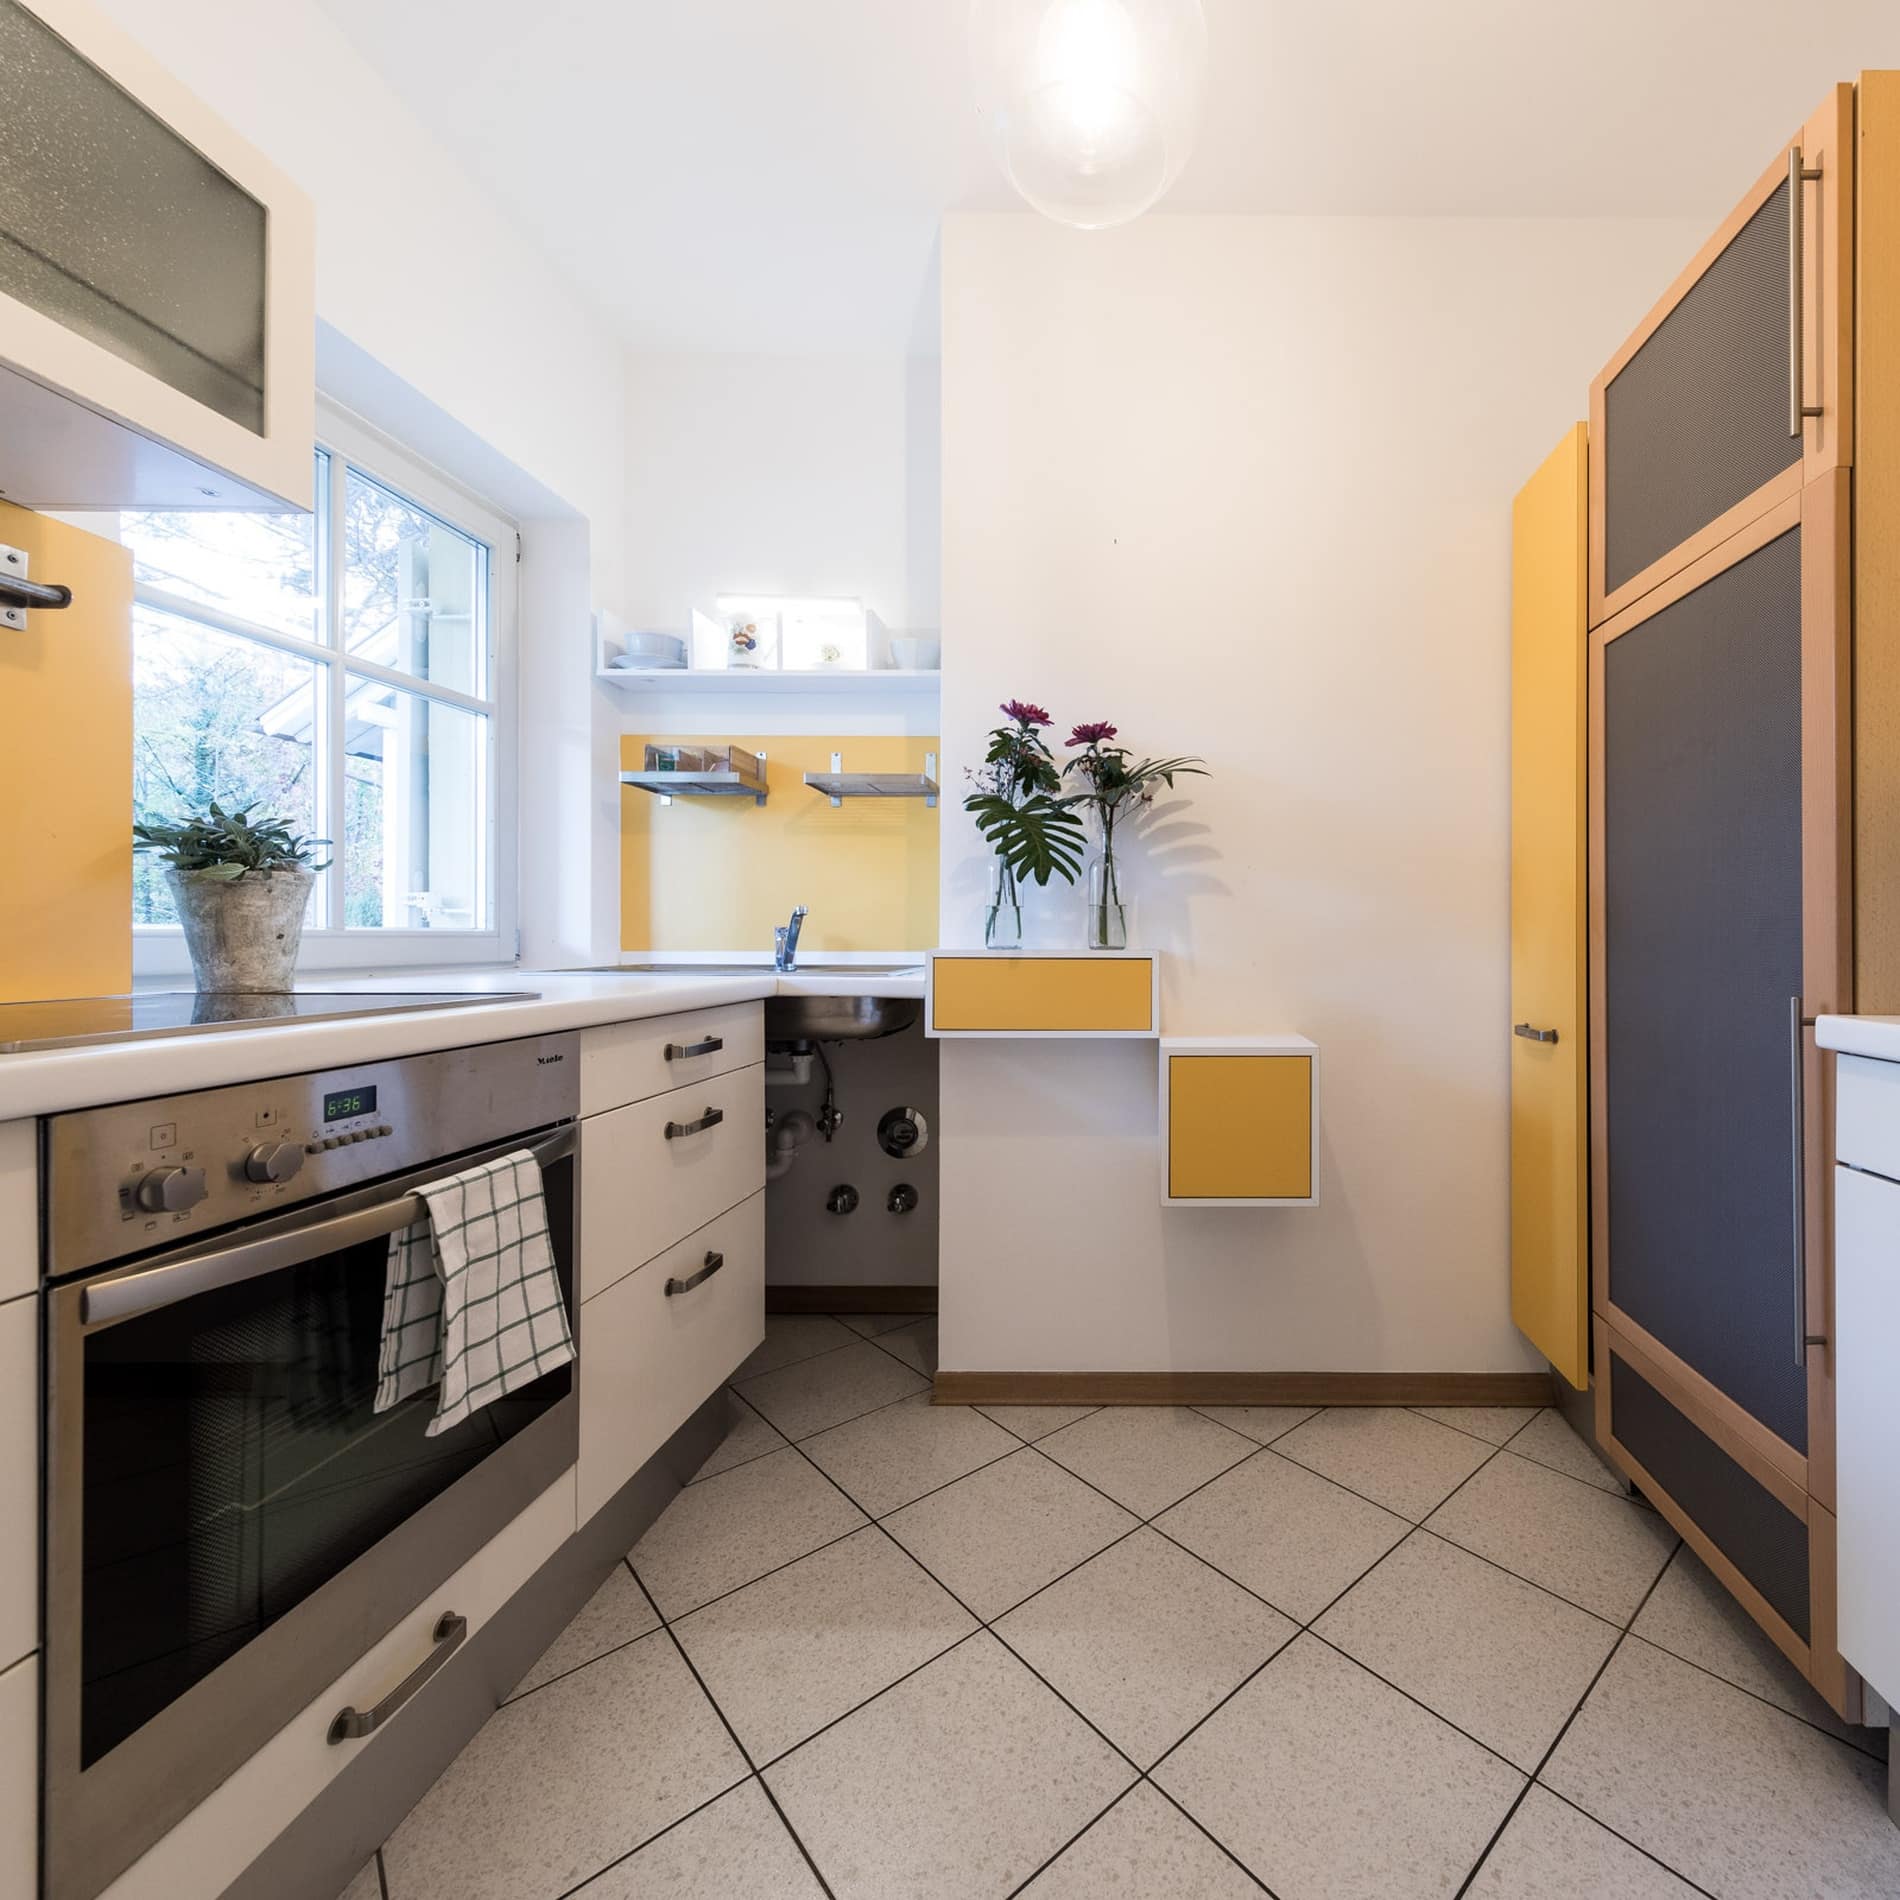 Die helle, modern eingerichtete Küche der Ferienwohnung in Lana, Südtirol, bietet alles Nötige, um selbst Mahlzeiten zuzubereiten